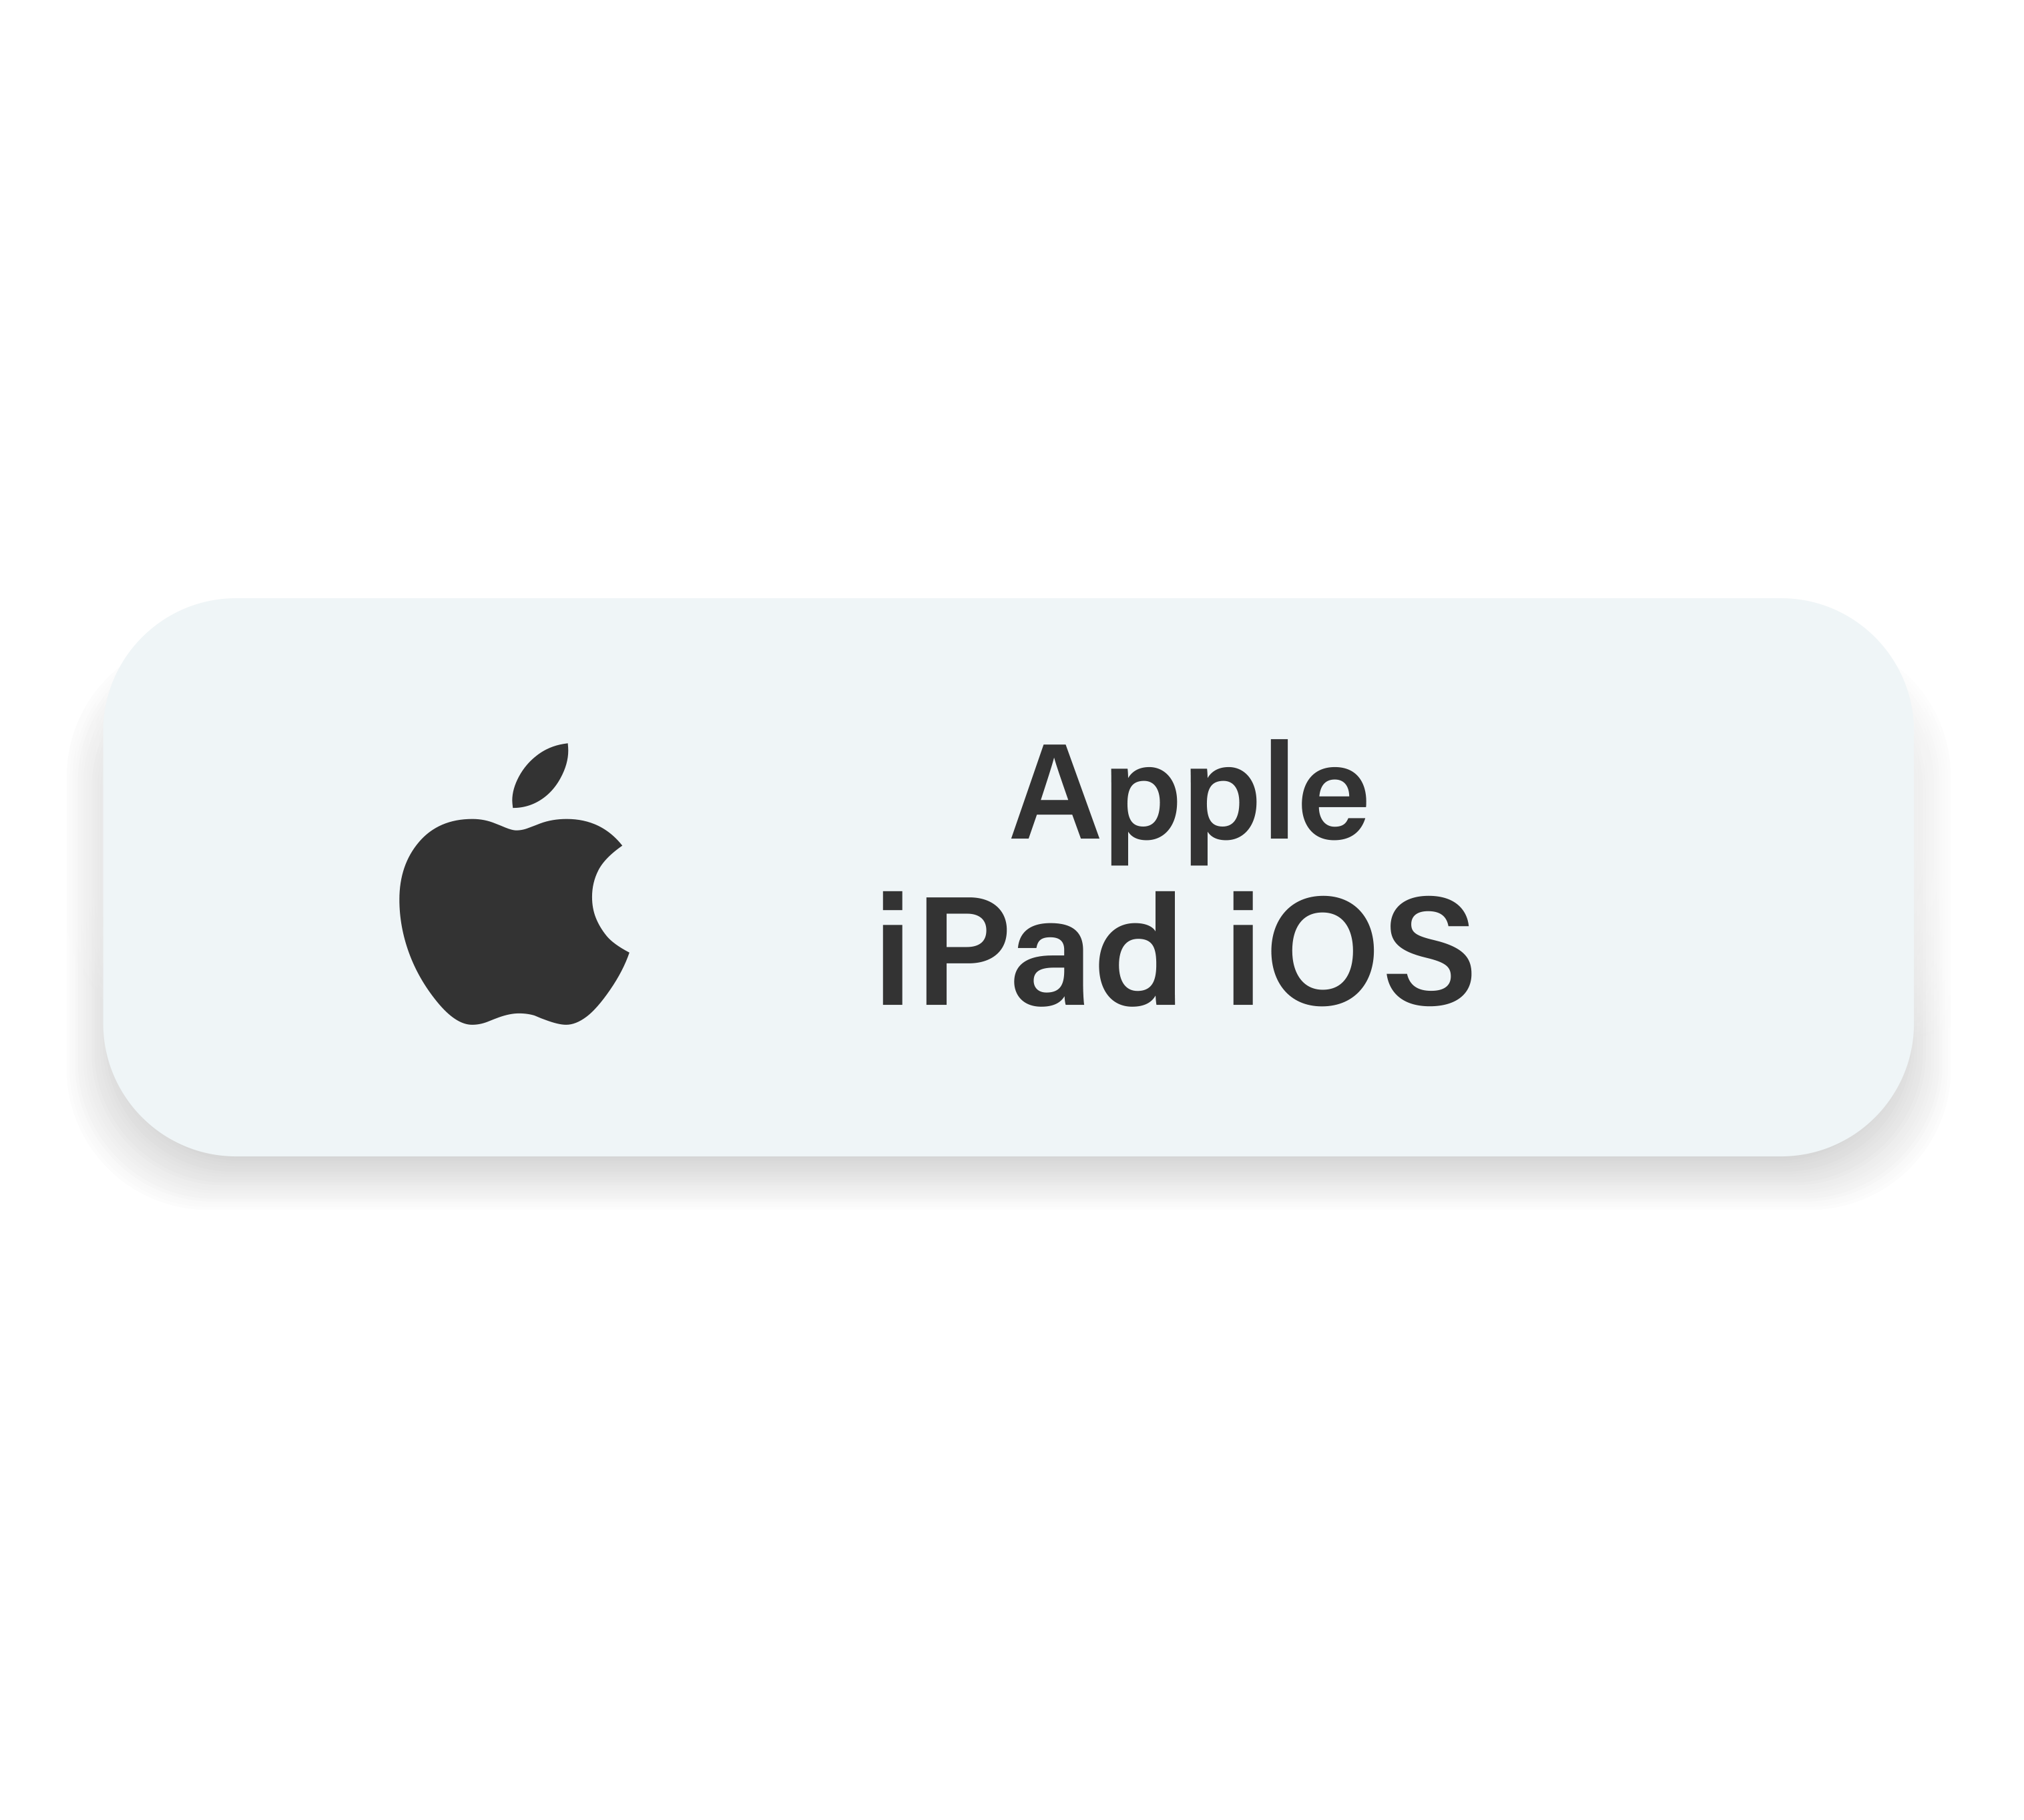 Planner Digital, Caderno Digital, Stickers Adesivo Digital exclusivo para iPad Apple iOS 